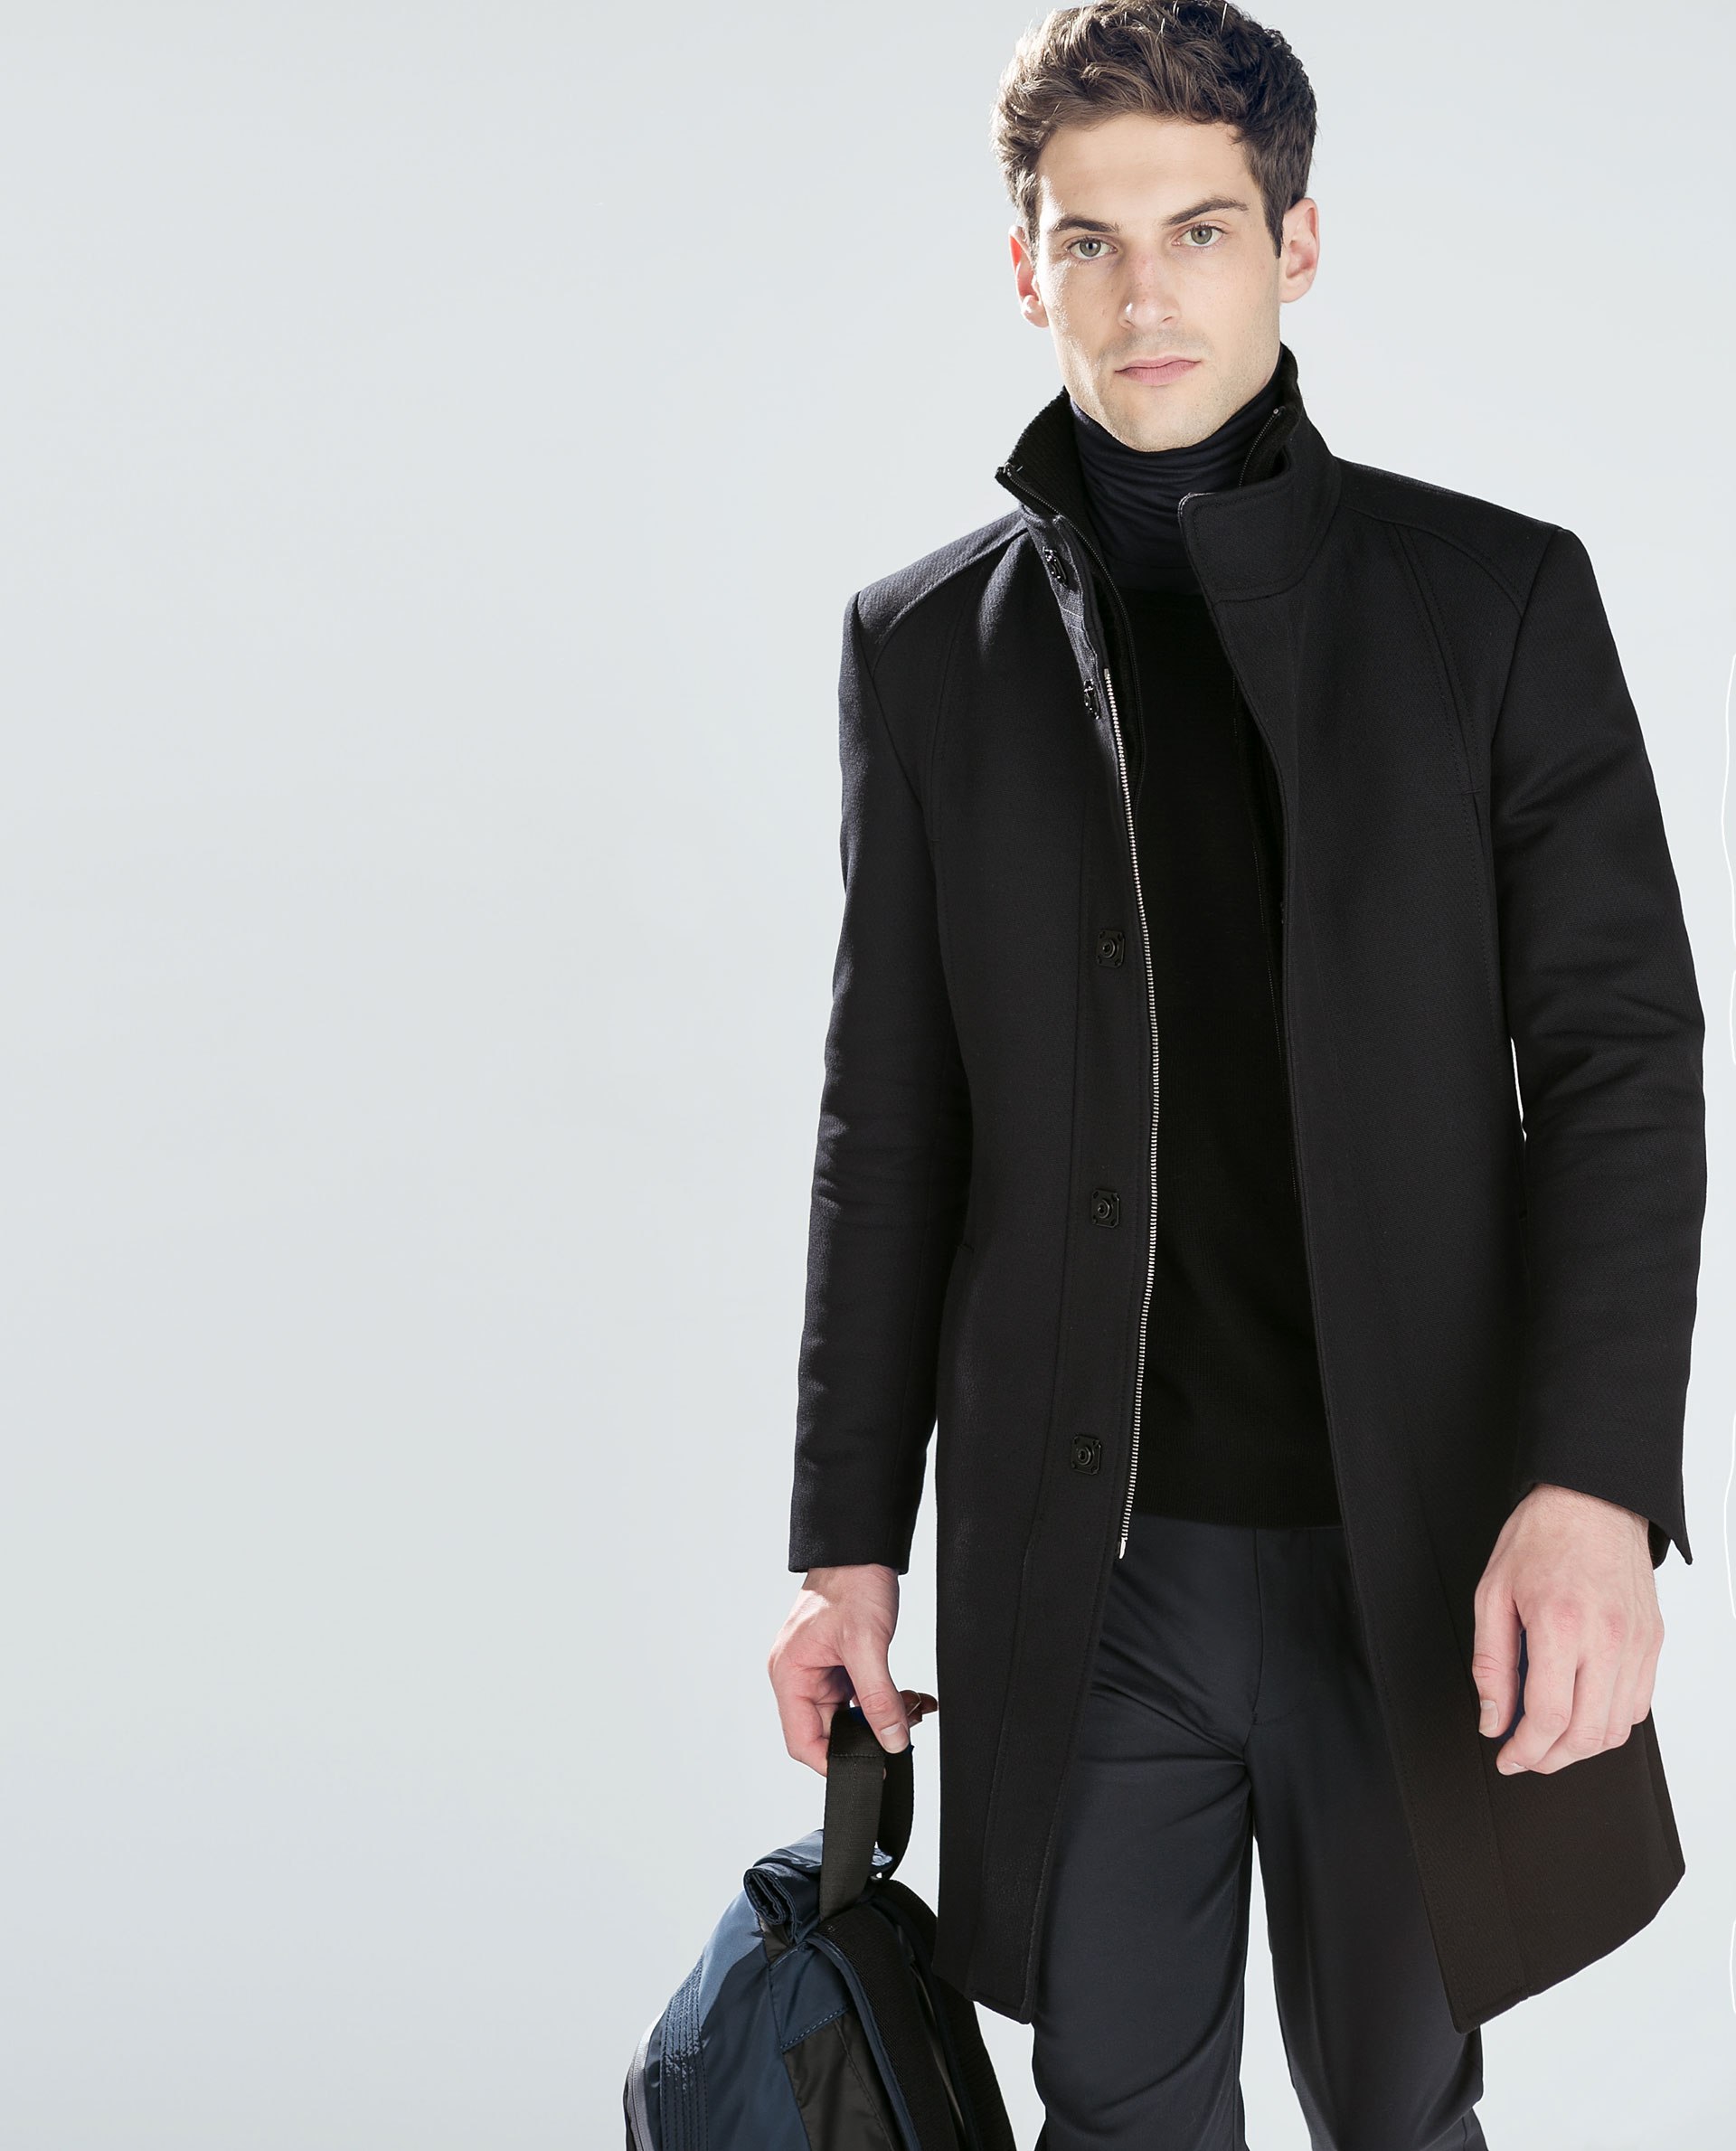 Купить черное пальто мужское. Пальто мужское Zara man двухбортовое. Zara Palto мужское. Пальто мужское Zara 2020. Zara 80089348-4 мужское пальто.